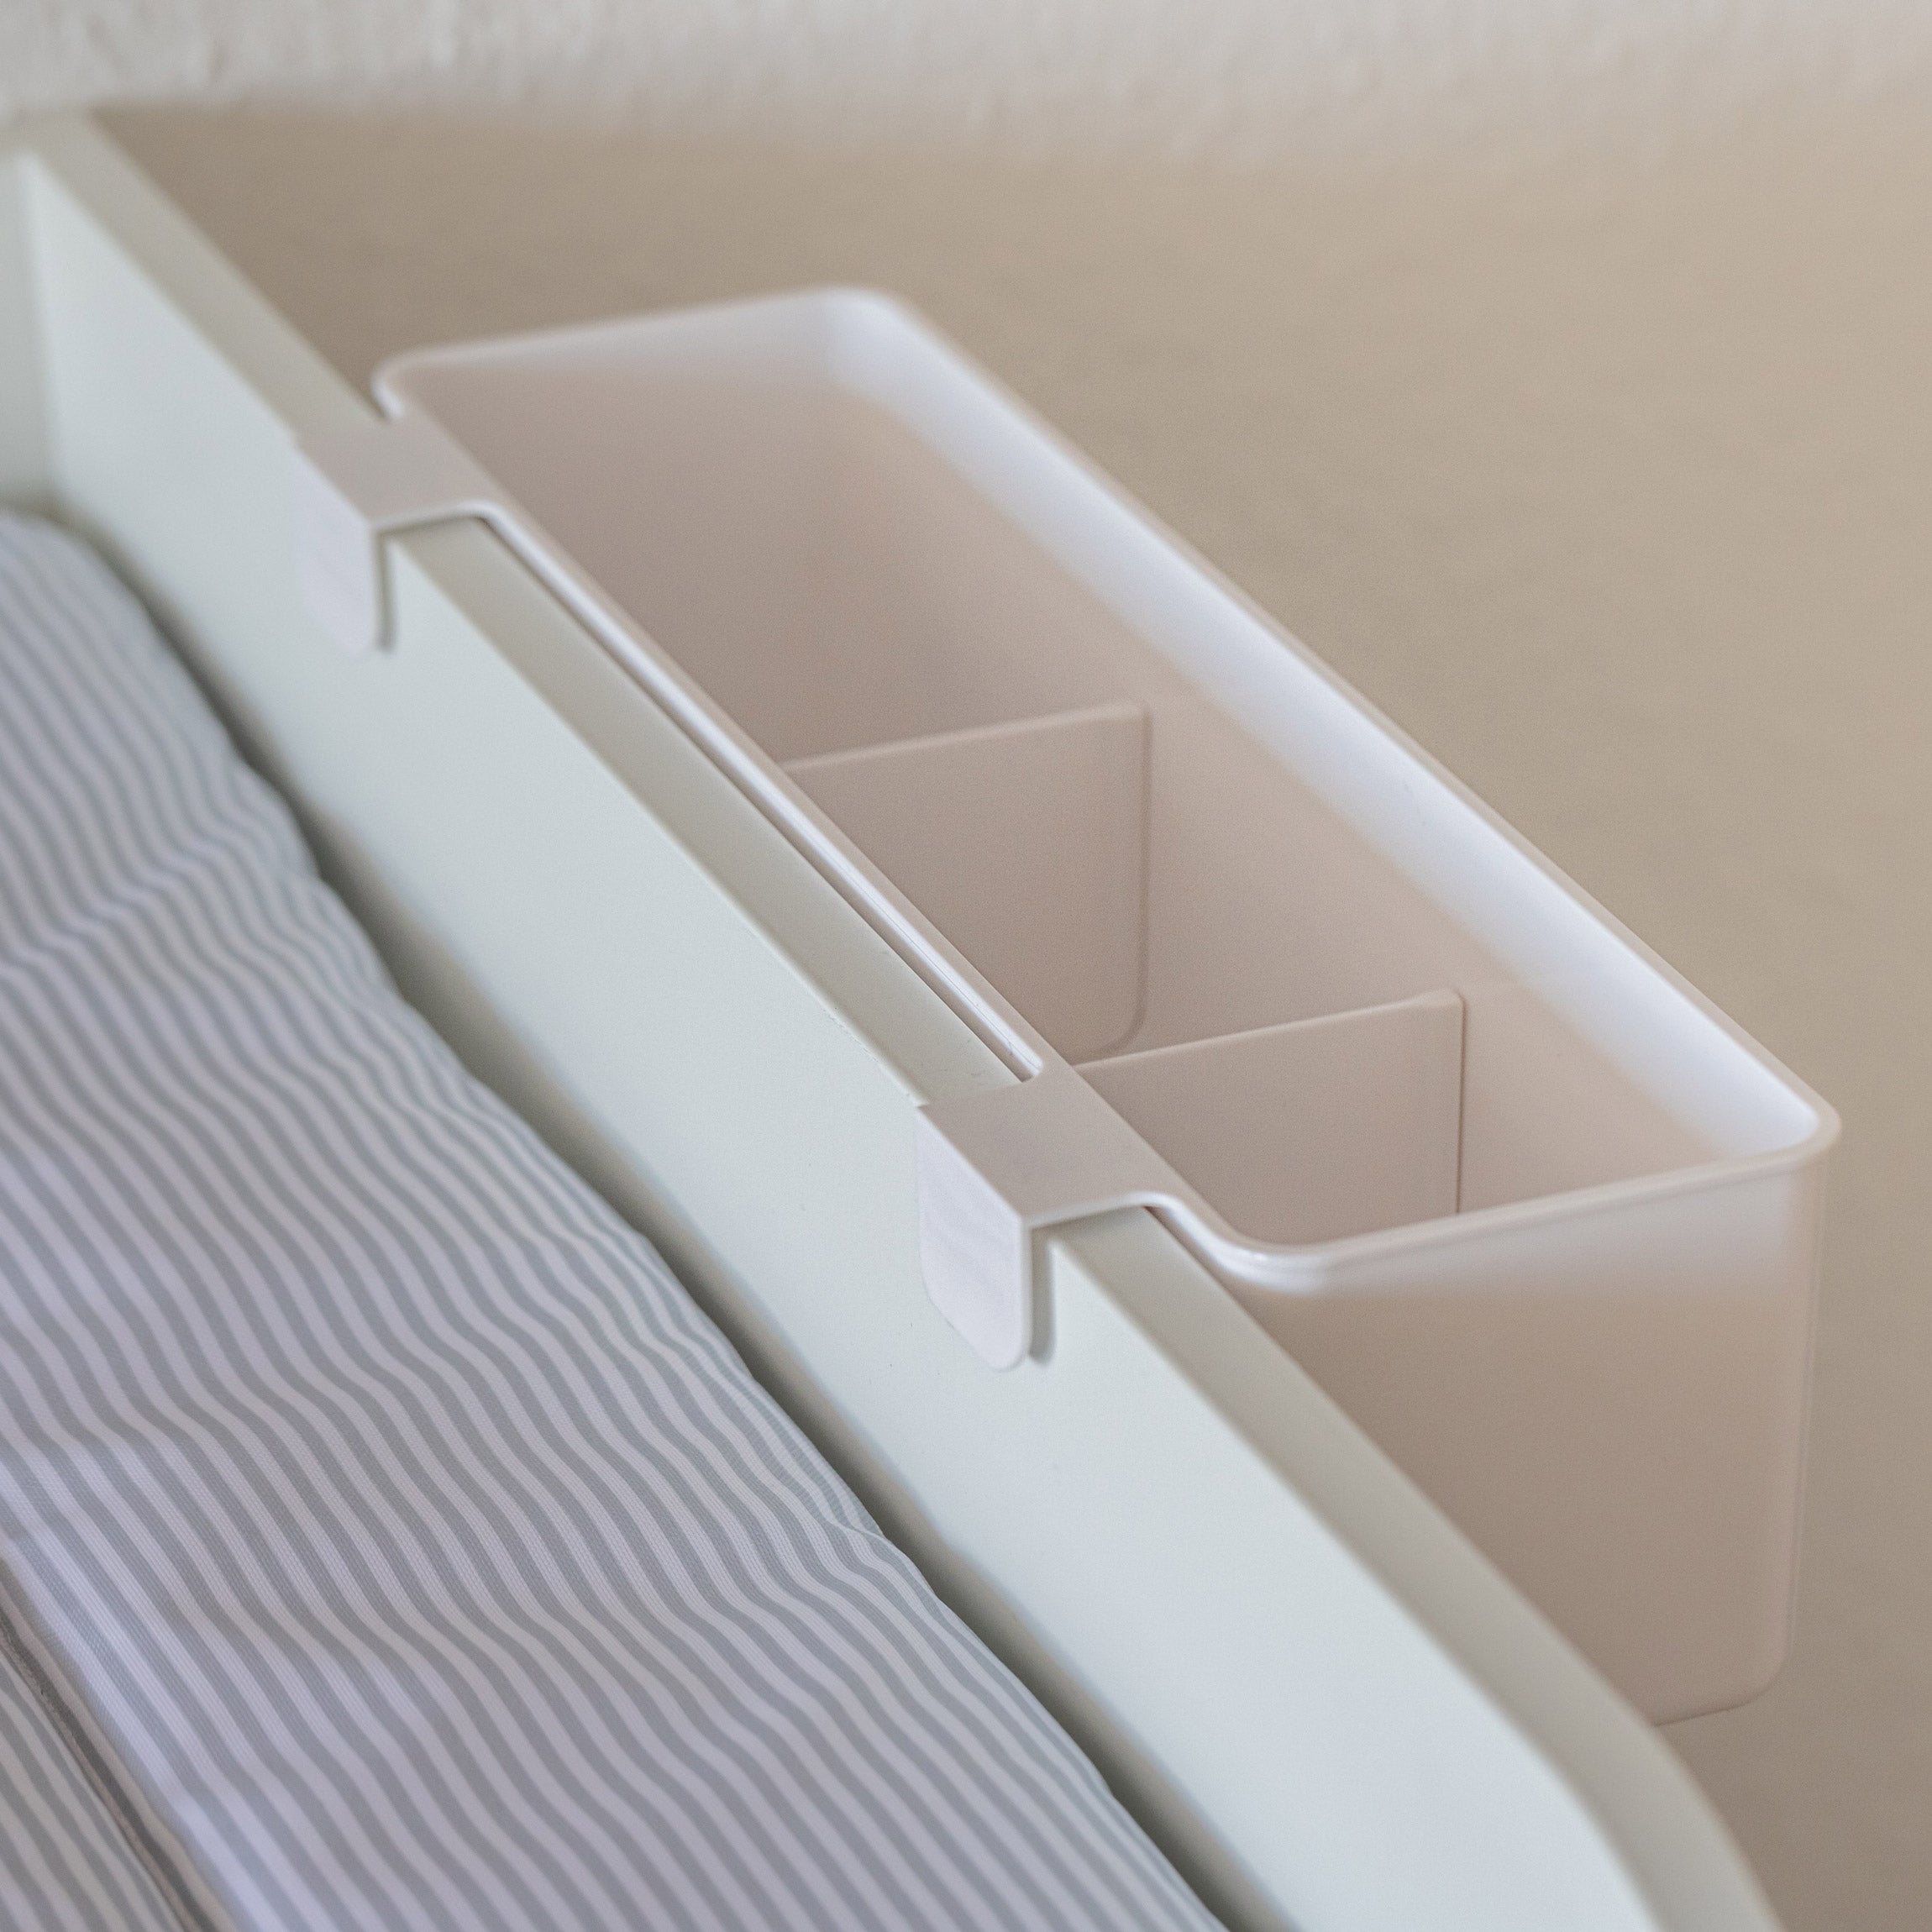 Detailansicht von einem Kunststoff Wickeltisch Organizer mit 2 Zwischenwänden zum Hängen. Der Aufbewahrungsbehälter hängt seitlich an einer Wickelkommode.